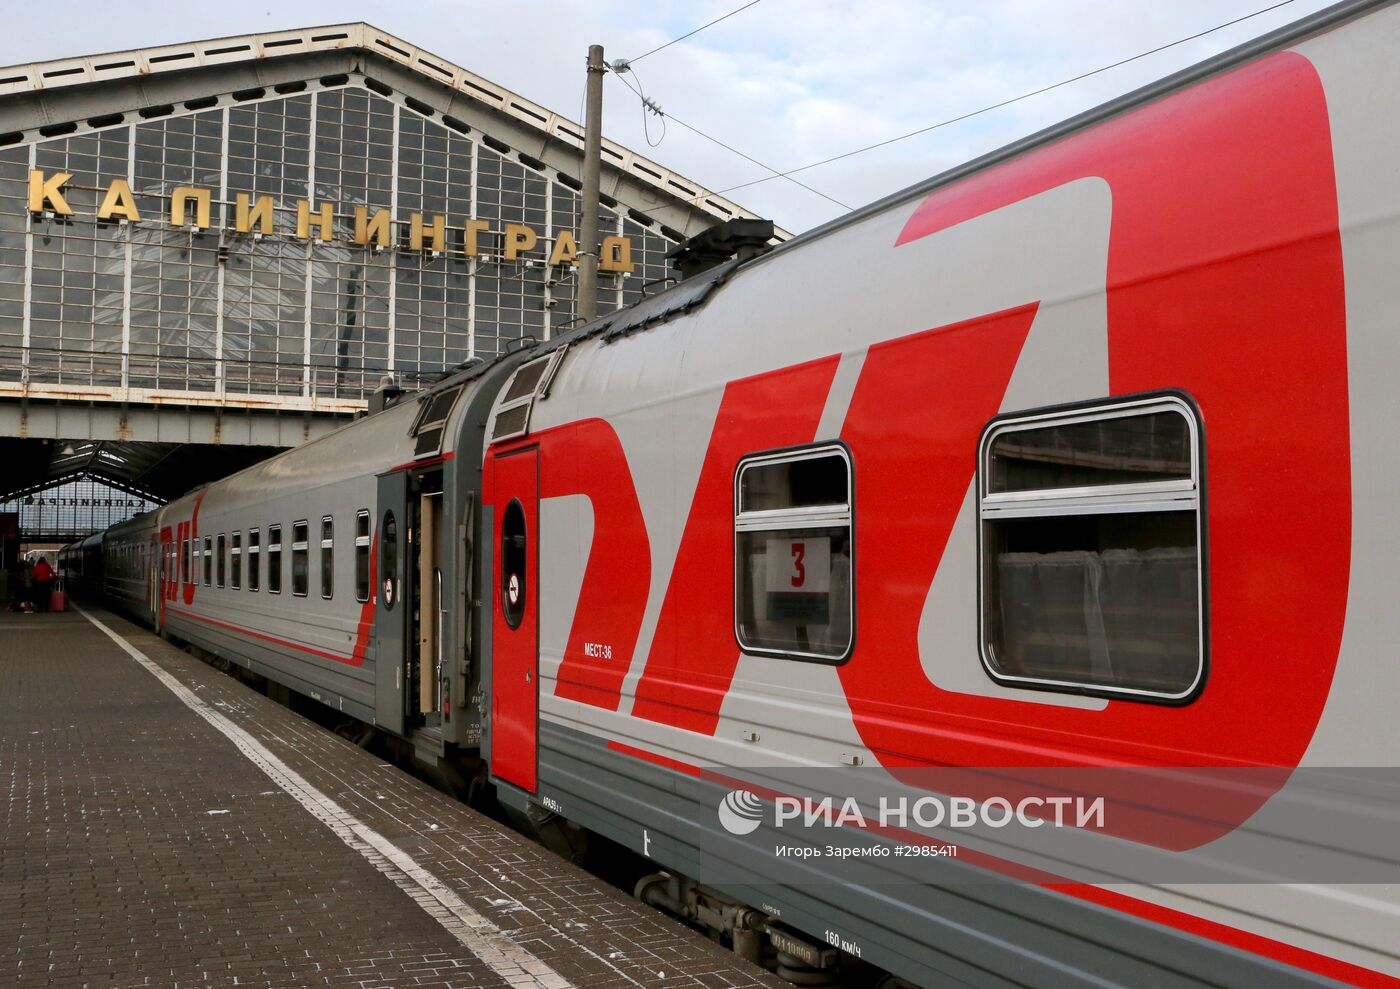 Торжественные мероприятия в честь 55-летия фирменного поезда "Янтарь" в Калининграде